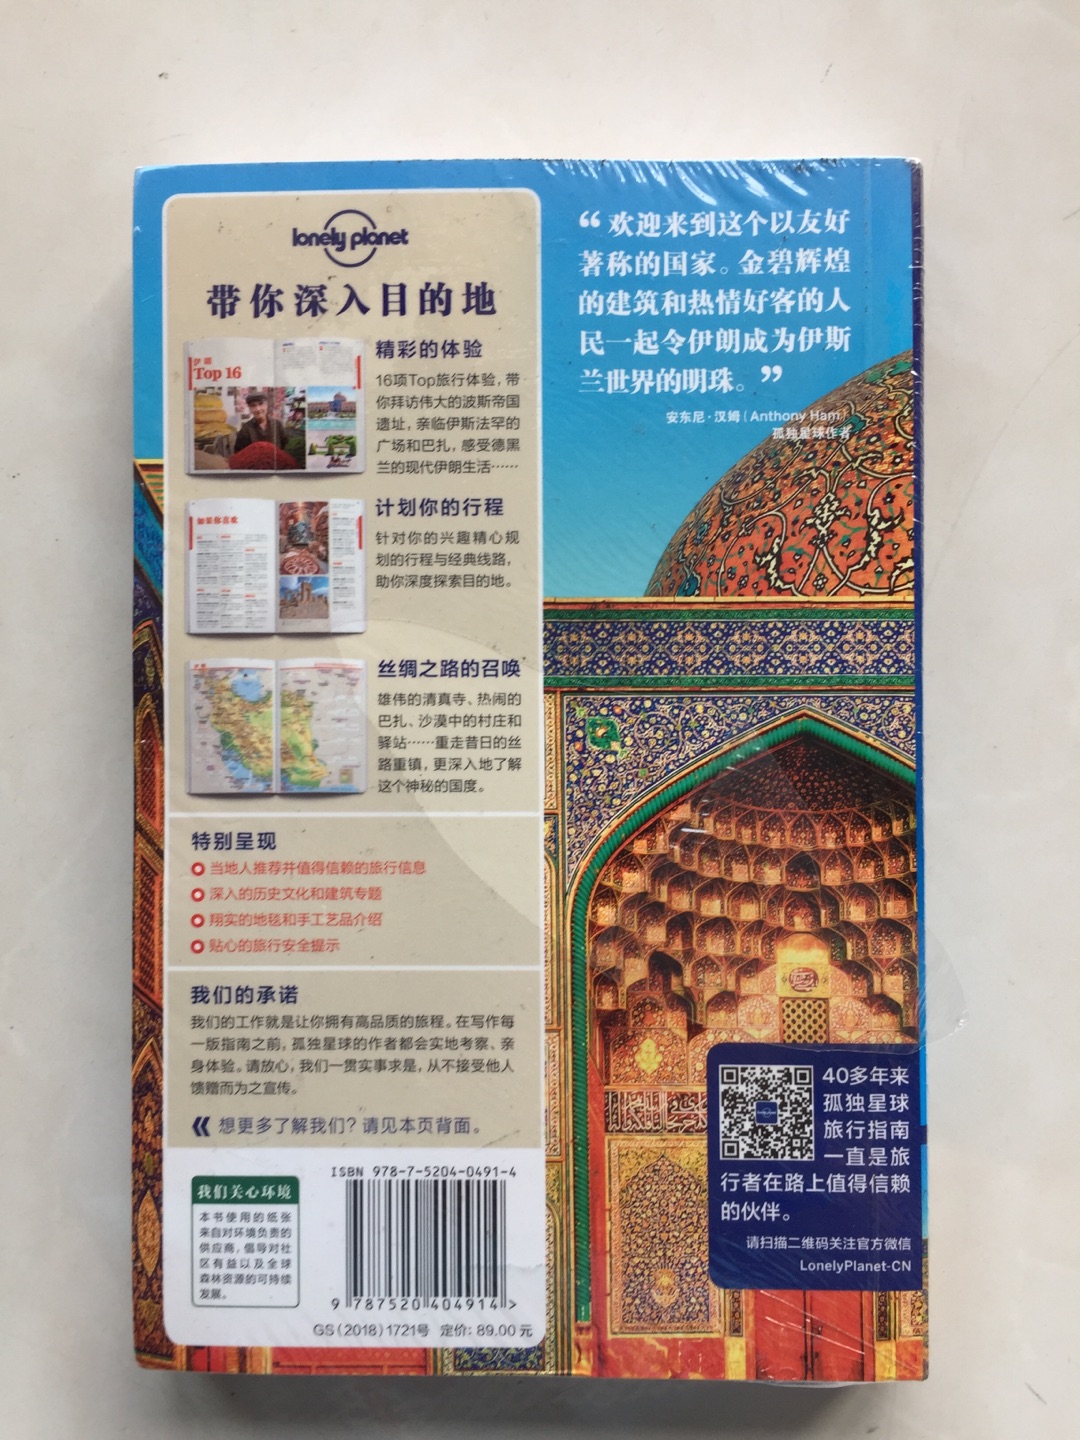 出游伊朗前，了解其旅游资源信息的神书。印刷精致、包装完整、信息量大，物流很快